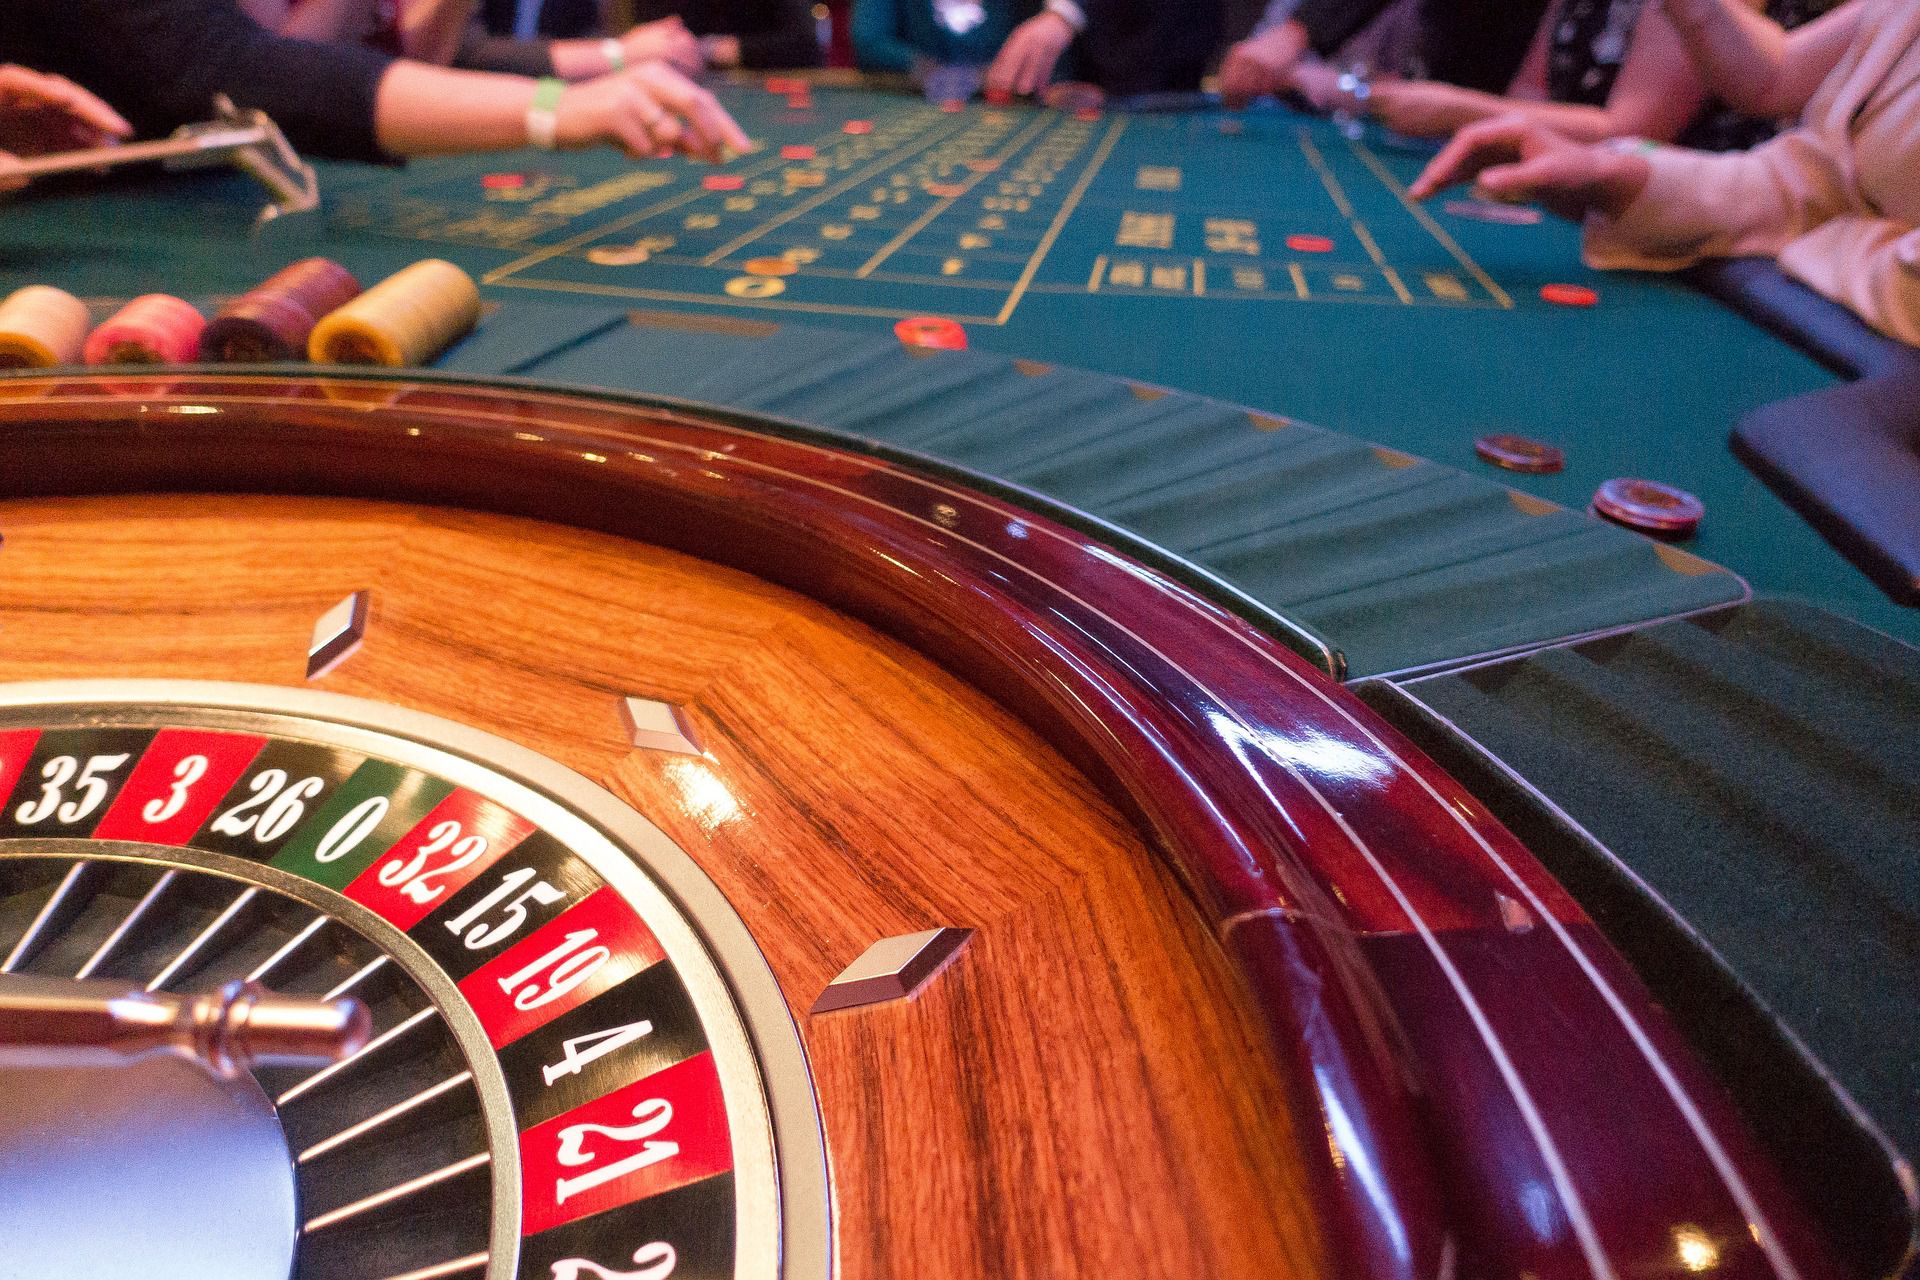 Welche psychologischen Tricks nutzen die Casinos?